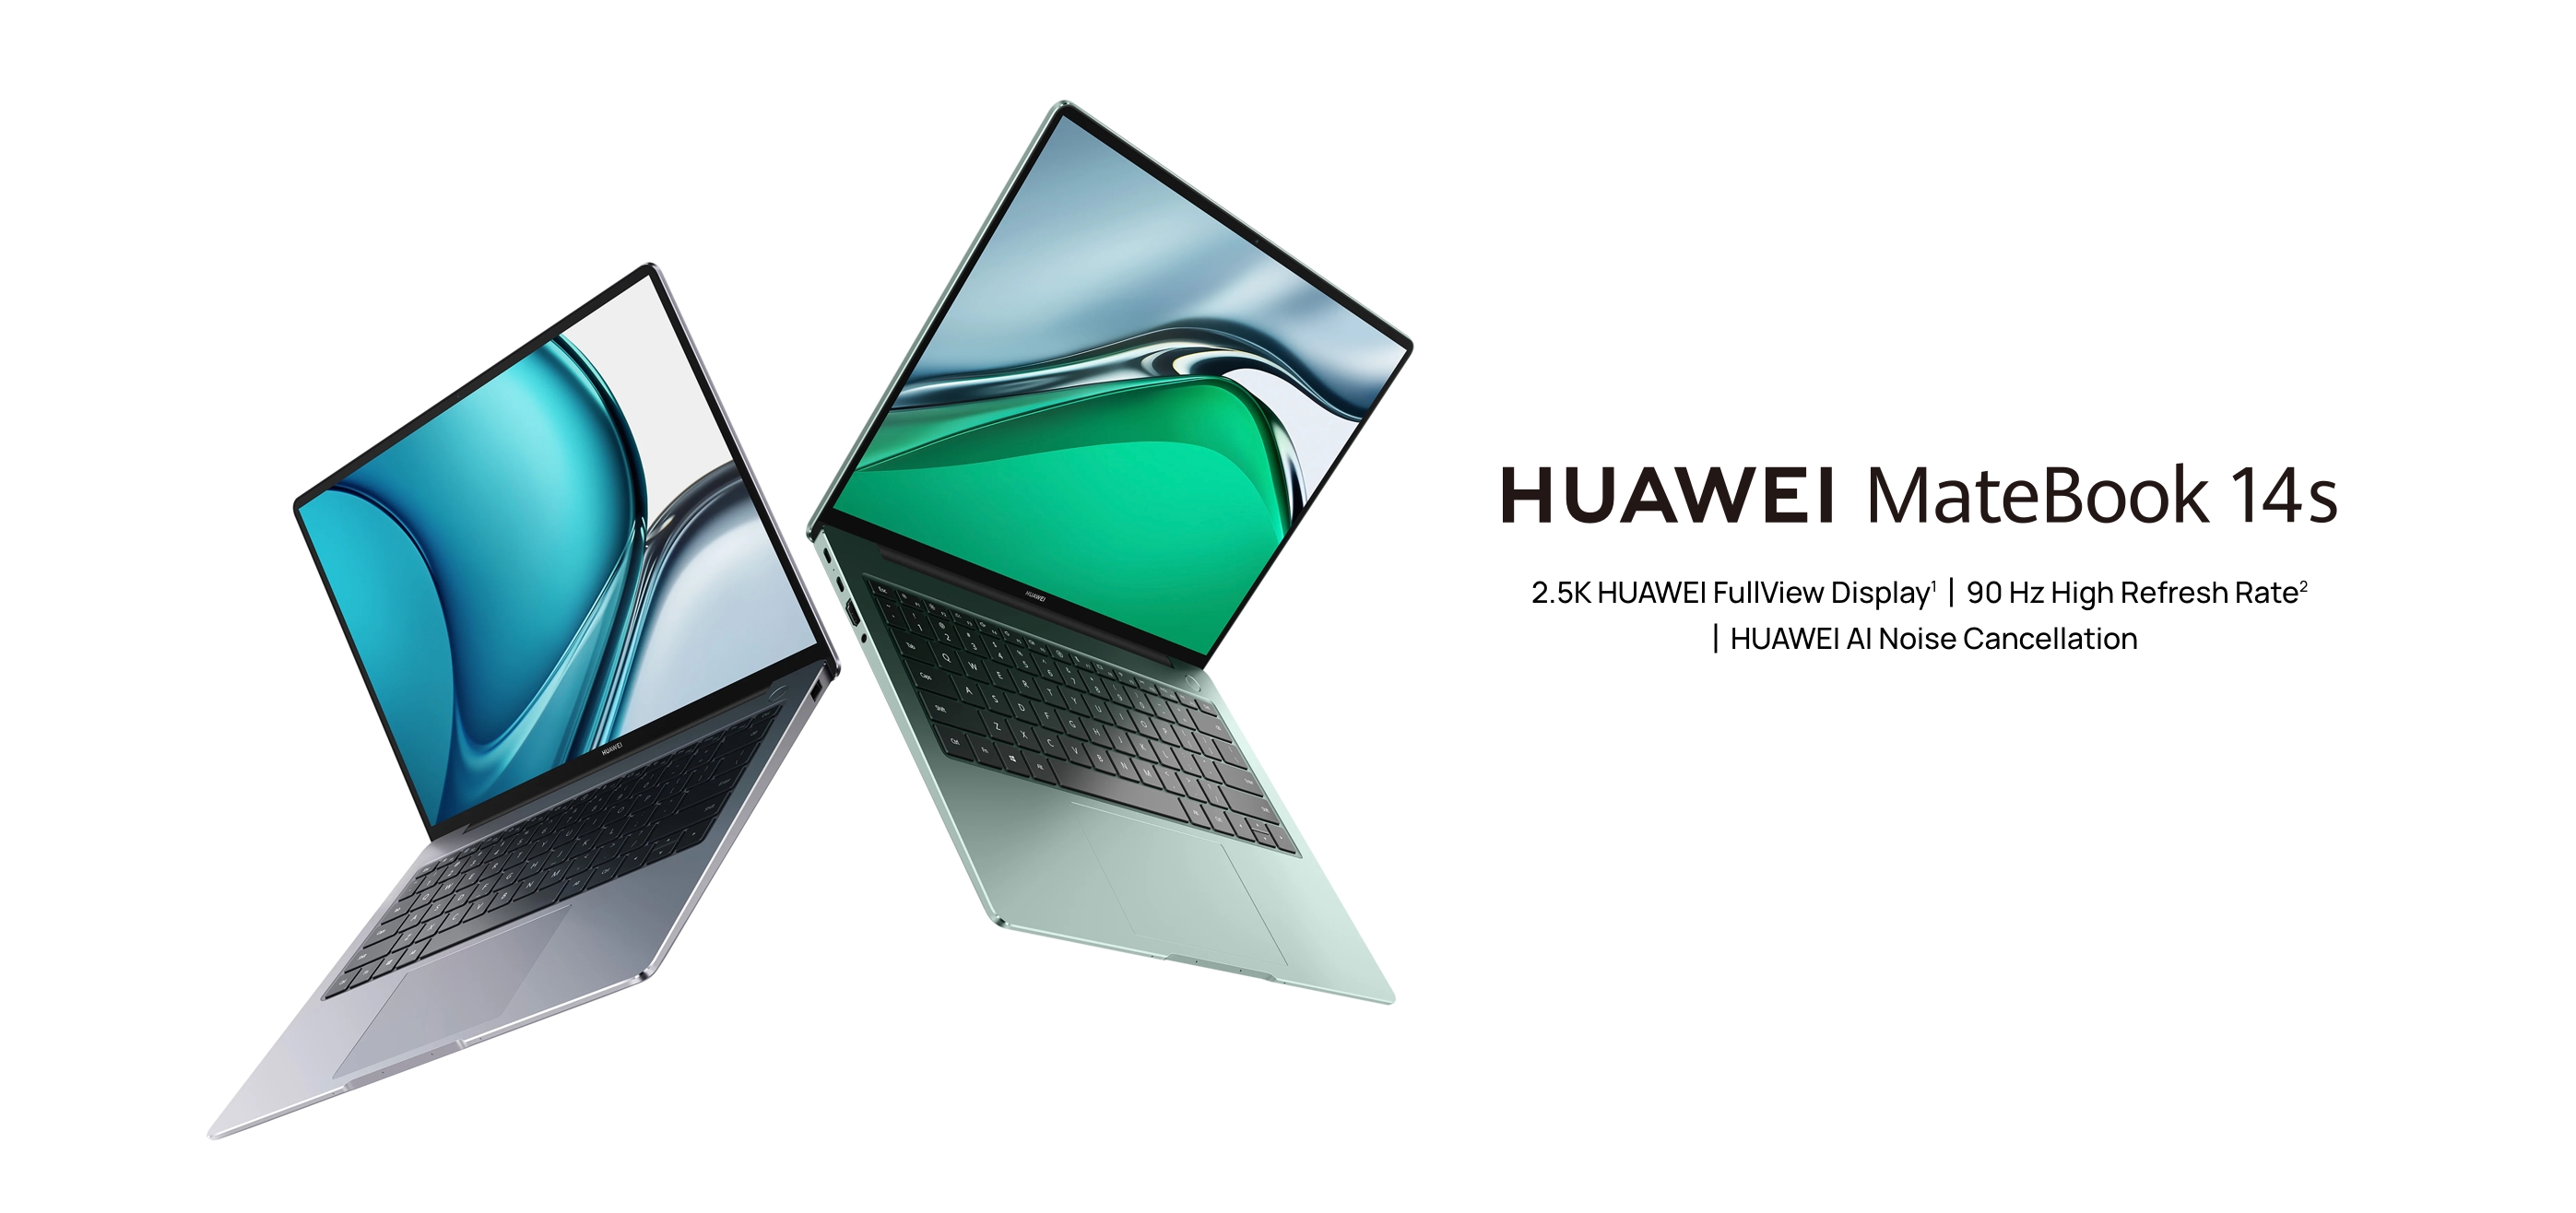 Huawei MateBook 14s mit 90Hz Bildschirm und Intel Core i7 Prozessor der 11. Generation kommt nach Europa